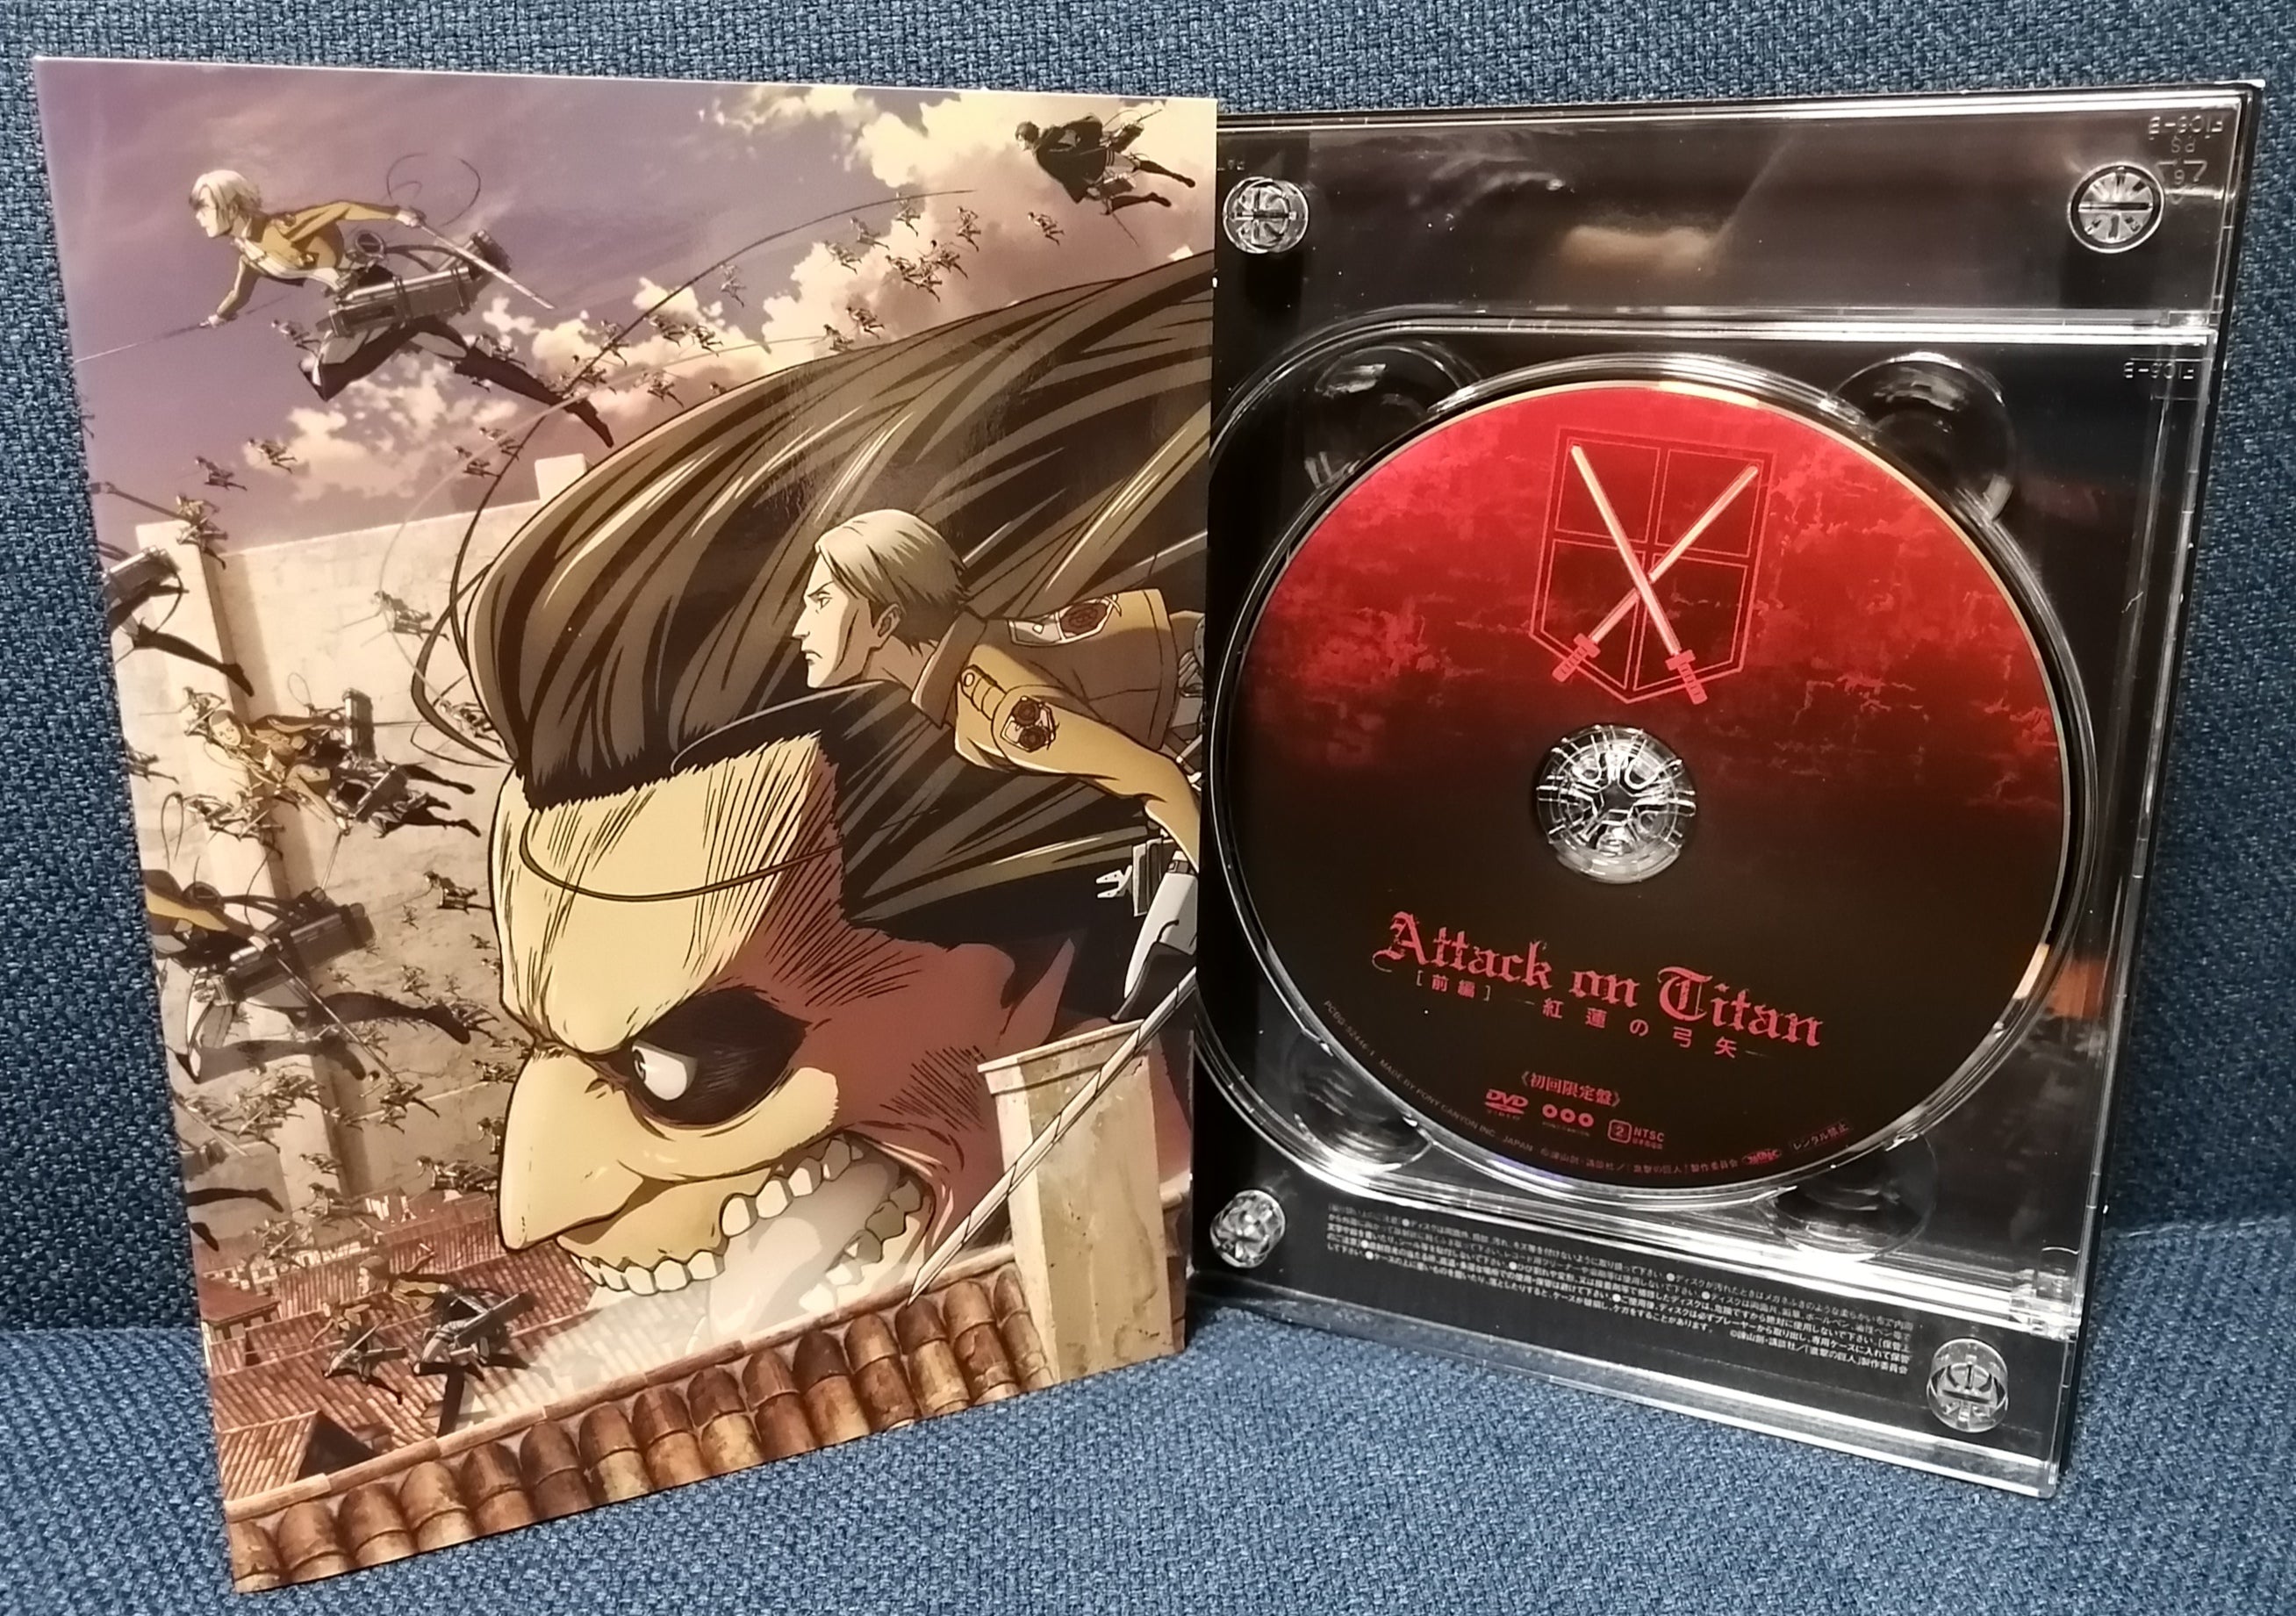 Dvd Attack On Titan Shingeki No Kyojin Legendado Temp 1 2 3